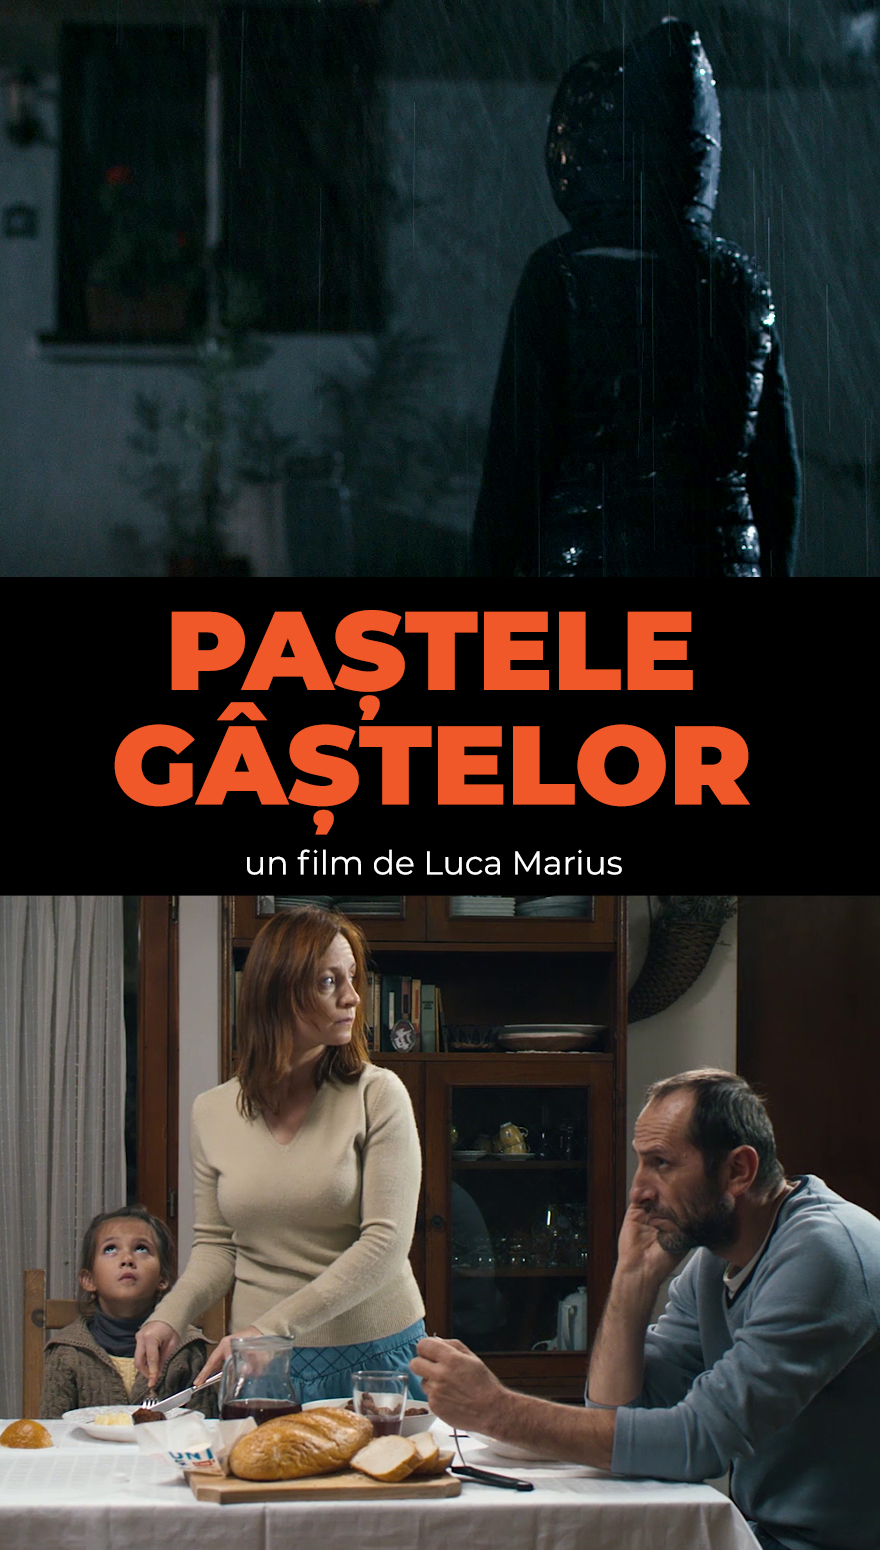 Paștele Gastelor - scurtmetraj regizat de Luca Marius - online pe CINEPUB